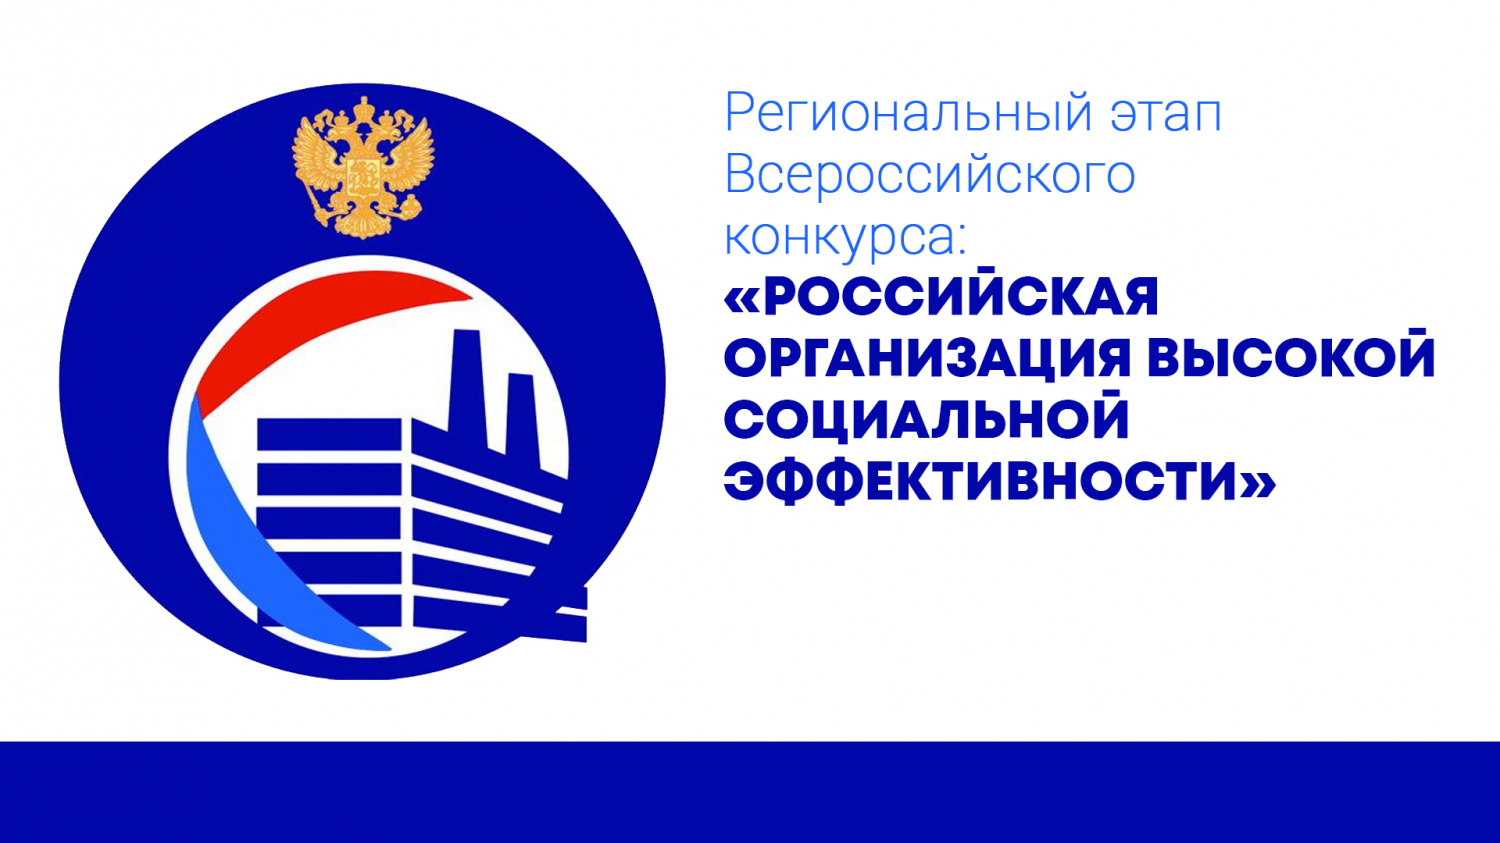 В Пензенской области стартовал ежегодный региональный этап Всероссийского конкурса «Российская организация высокой социальной эффективности»